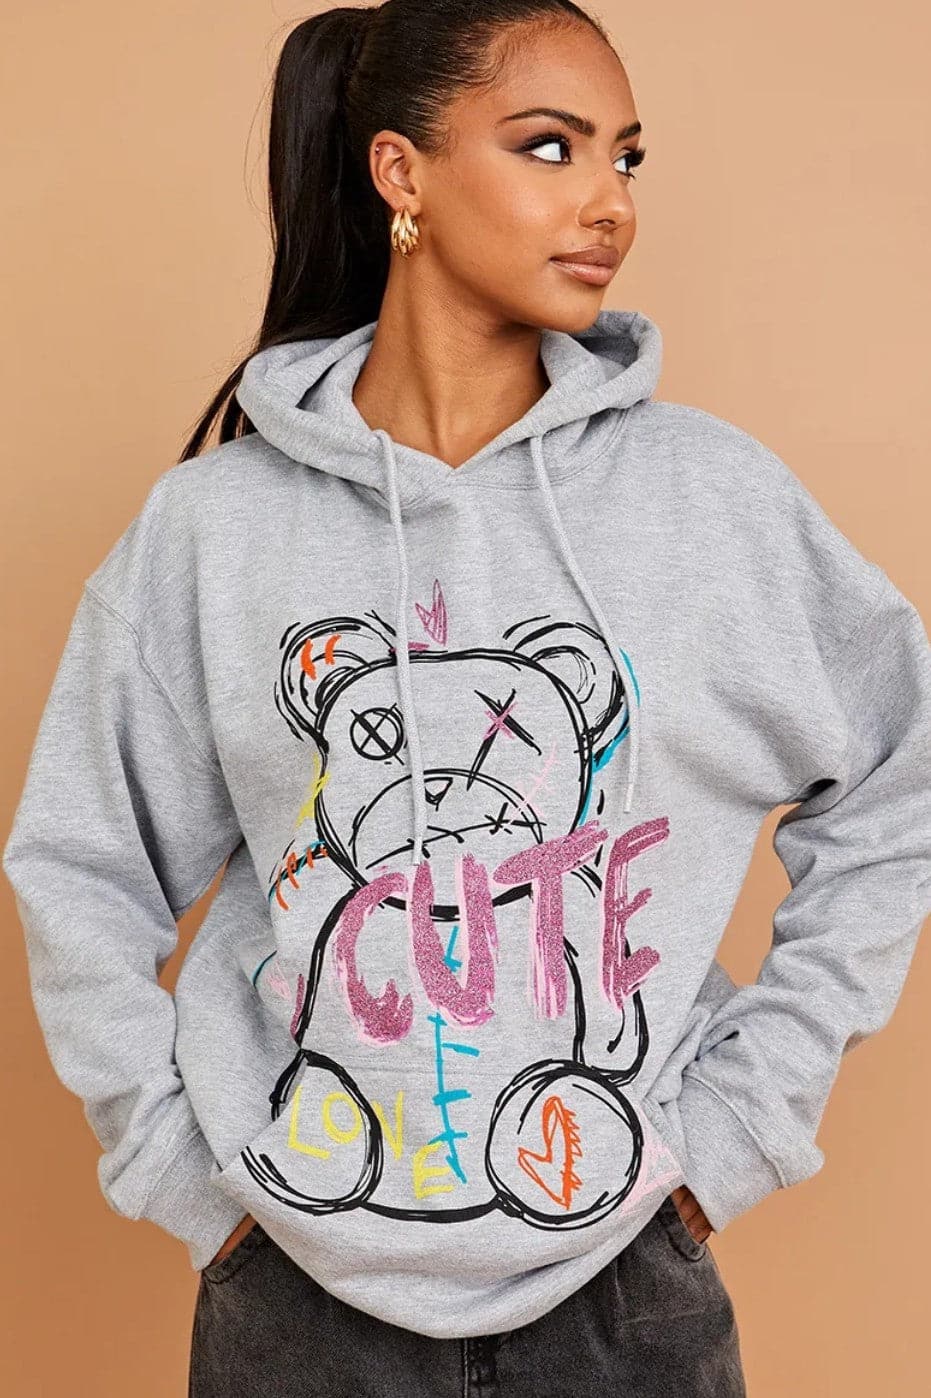 Hoodie Sweatshirt  Cute Teddy Graphics - Premium Hoodie Sweatshirt from justgal - Just £16.99! Shop now at justgal